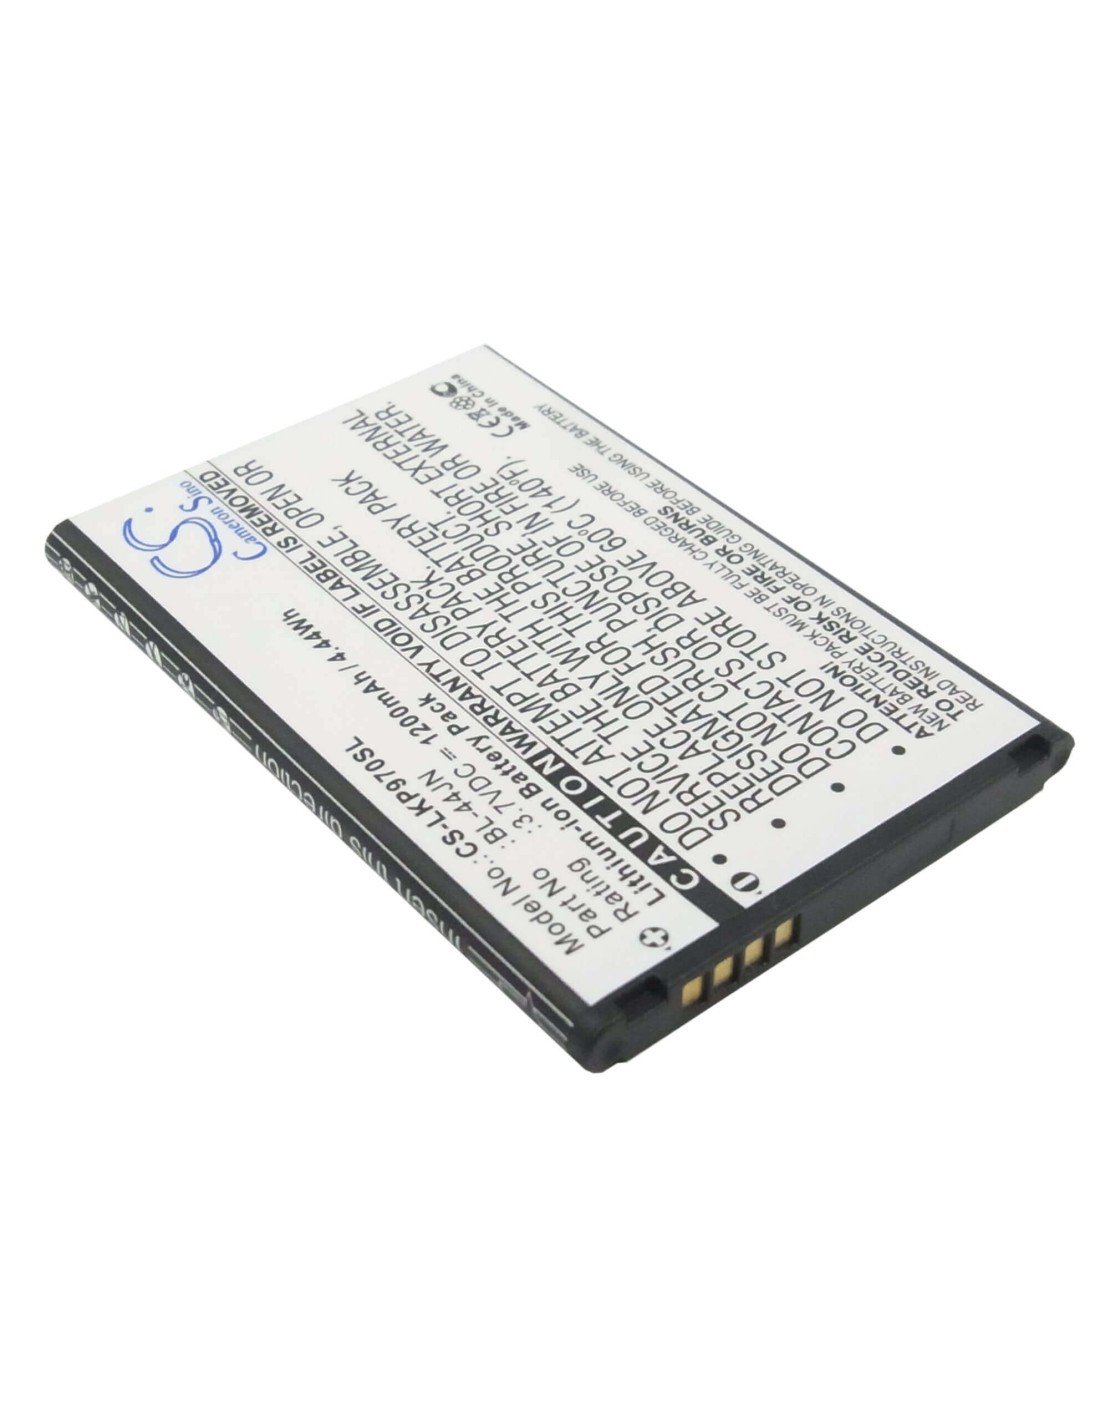 Battery for LG P970, Optimus Black, VS700 3.7V, 1200mAh - 4.44Wh